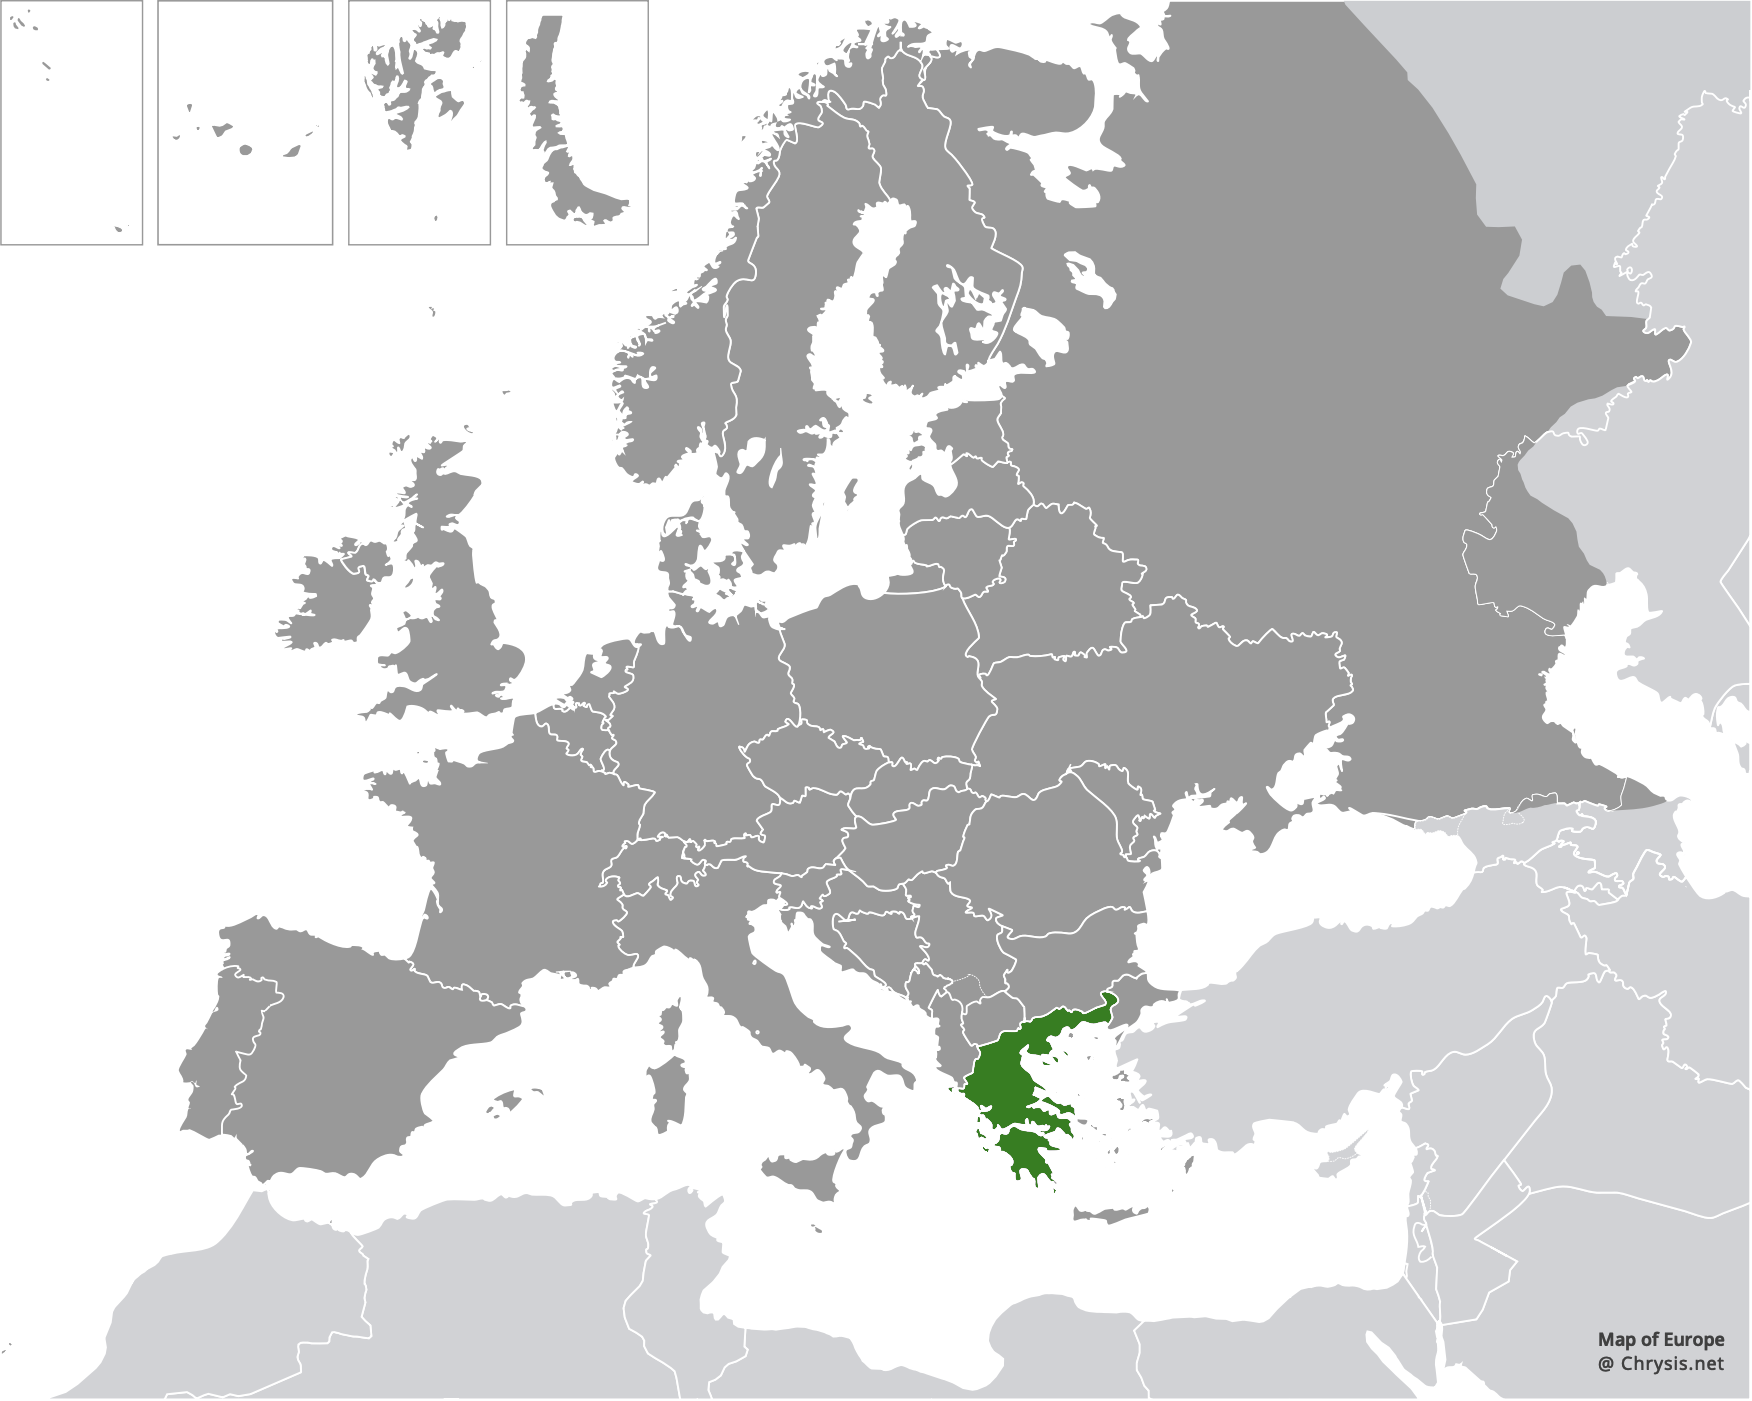 European distribution of Hedychridium aroanium Arens, 2004